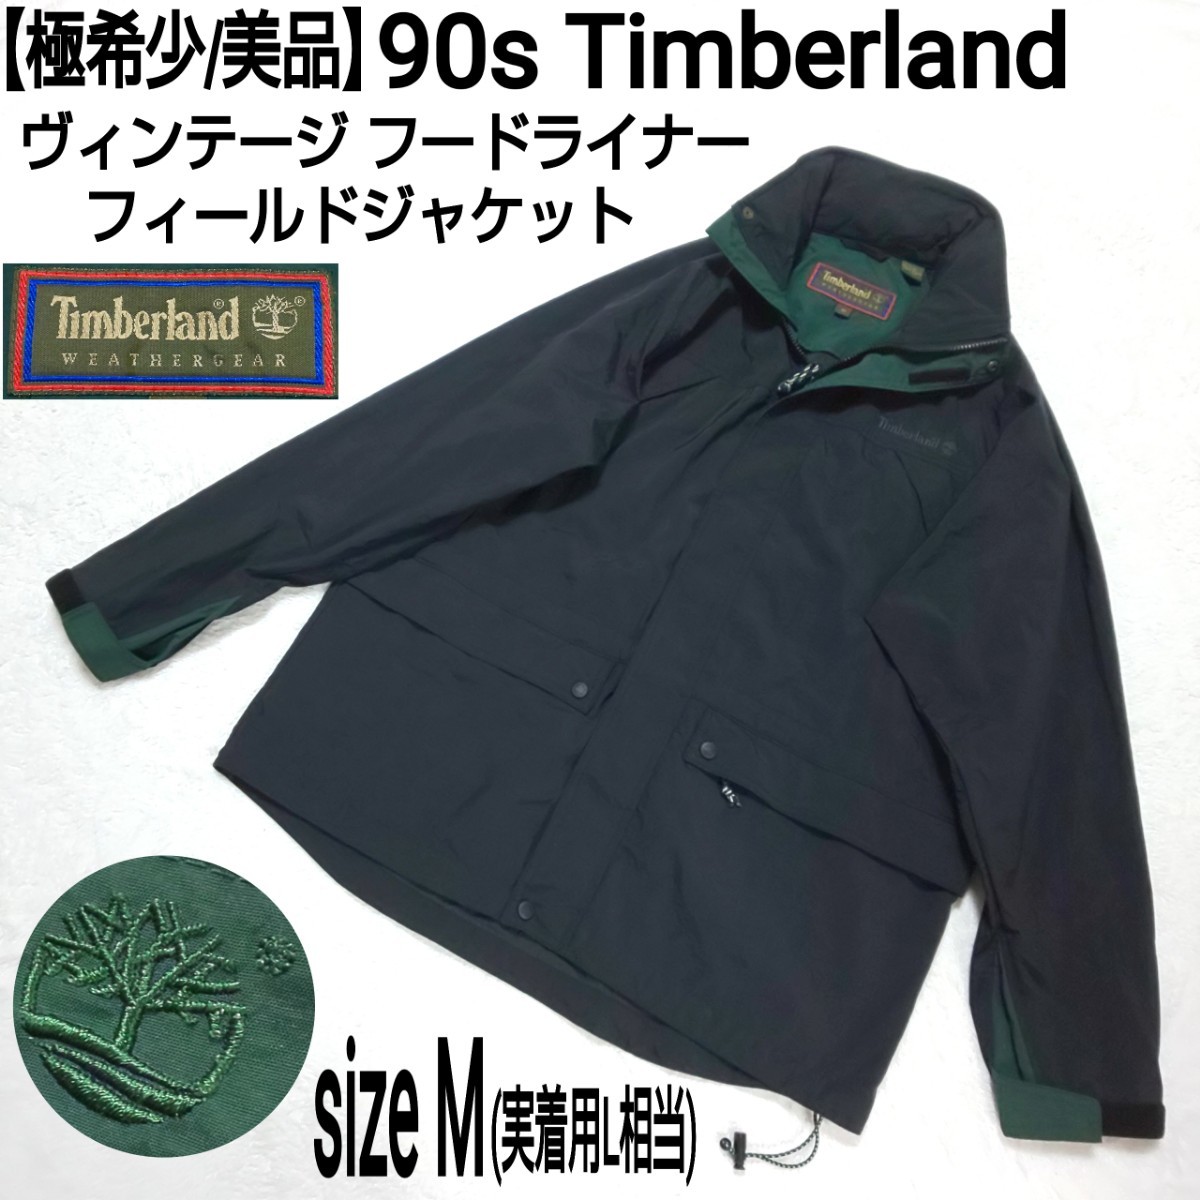 【極希少/美品】90s Timberland ティンバーランド フードライナー フィールドジャケット ワークジャケット(M) マウンテンパーカー 刺繍ロゴ